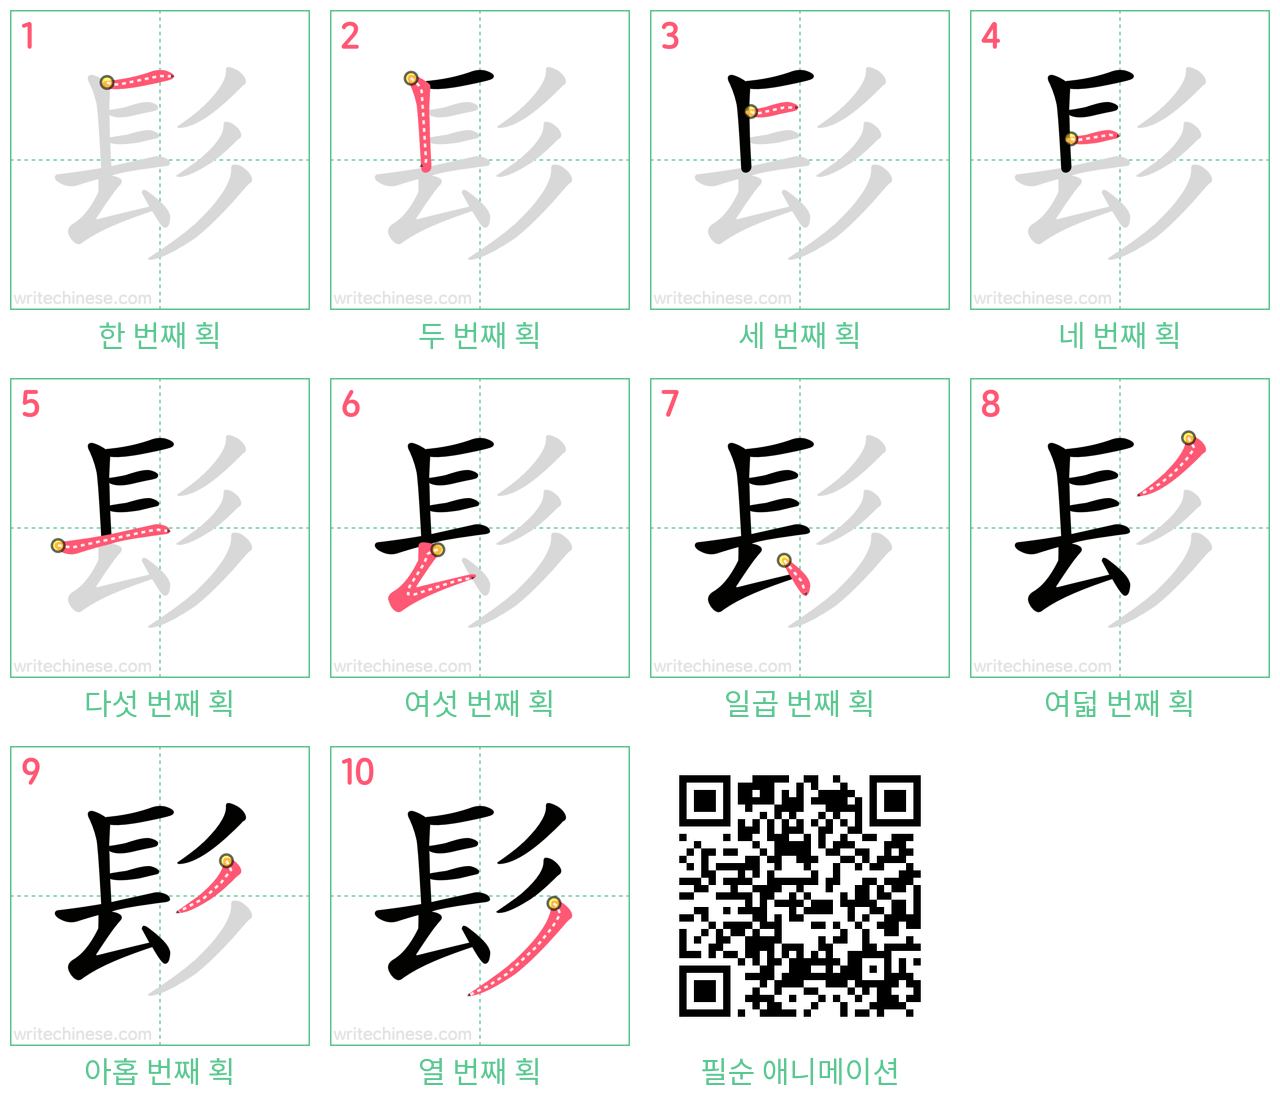 髟 step-by-step stroke order diagrams